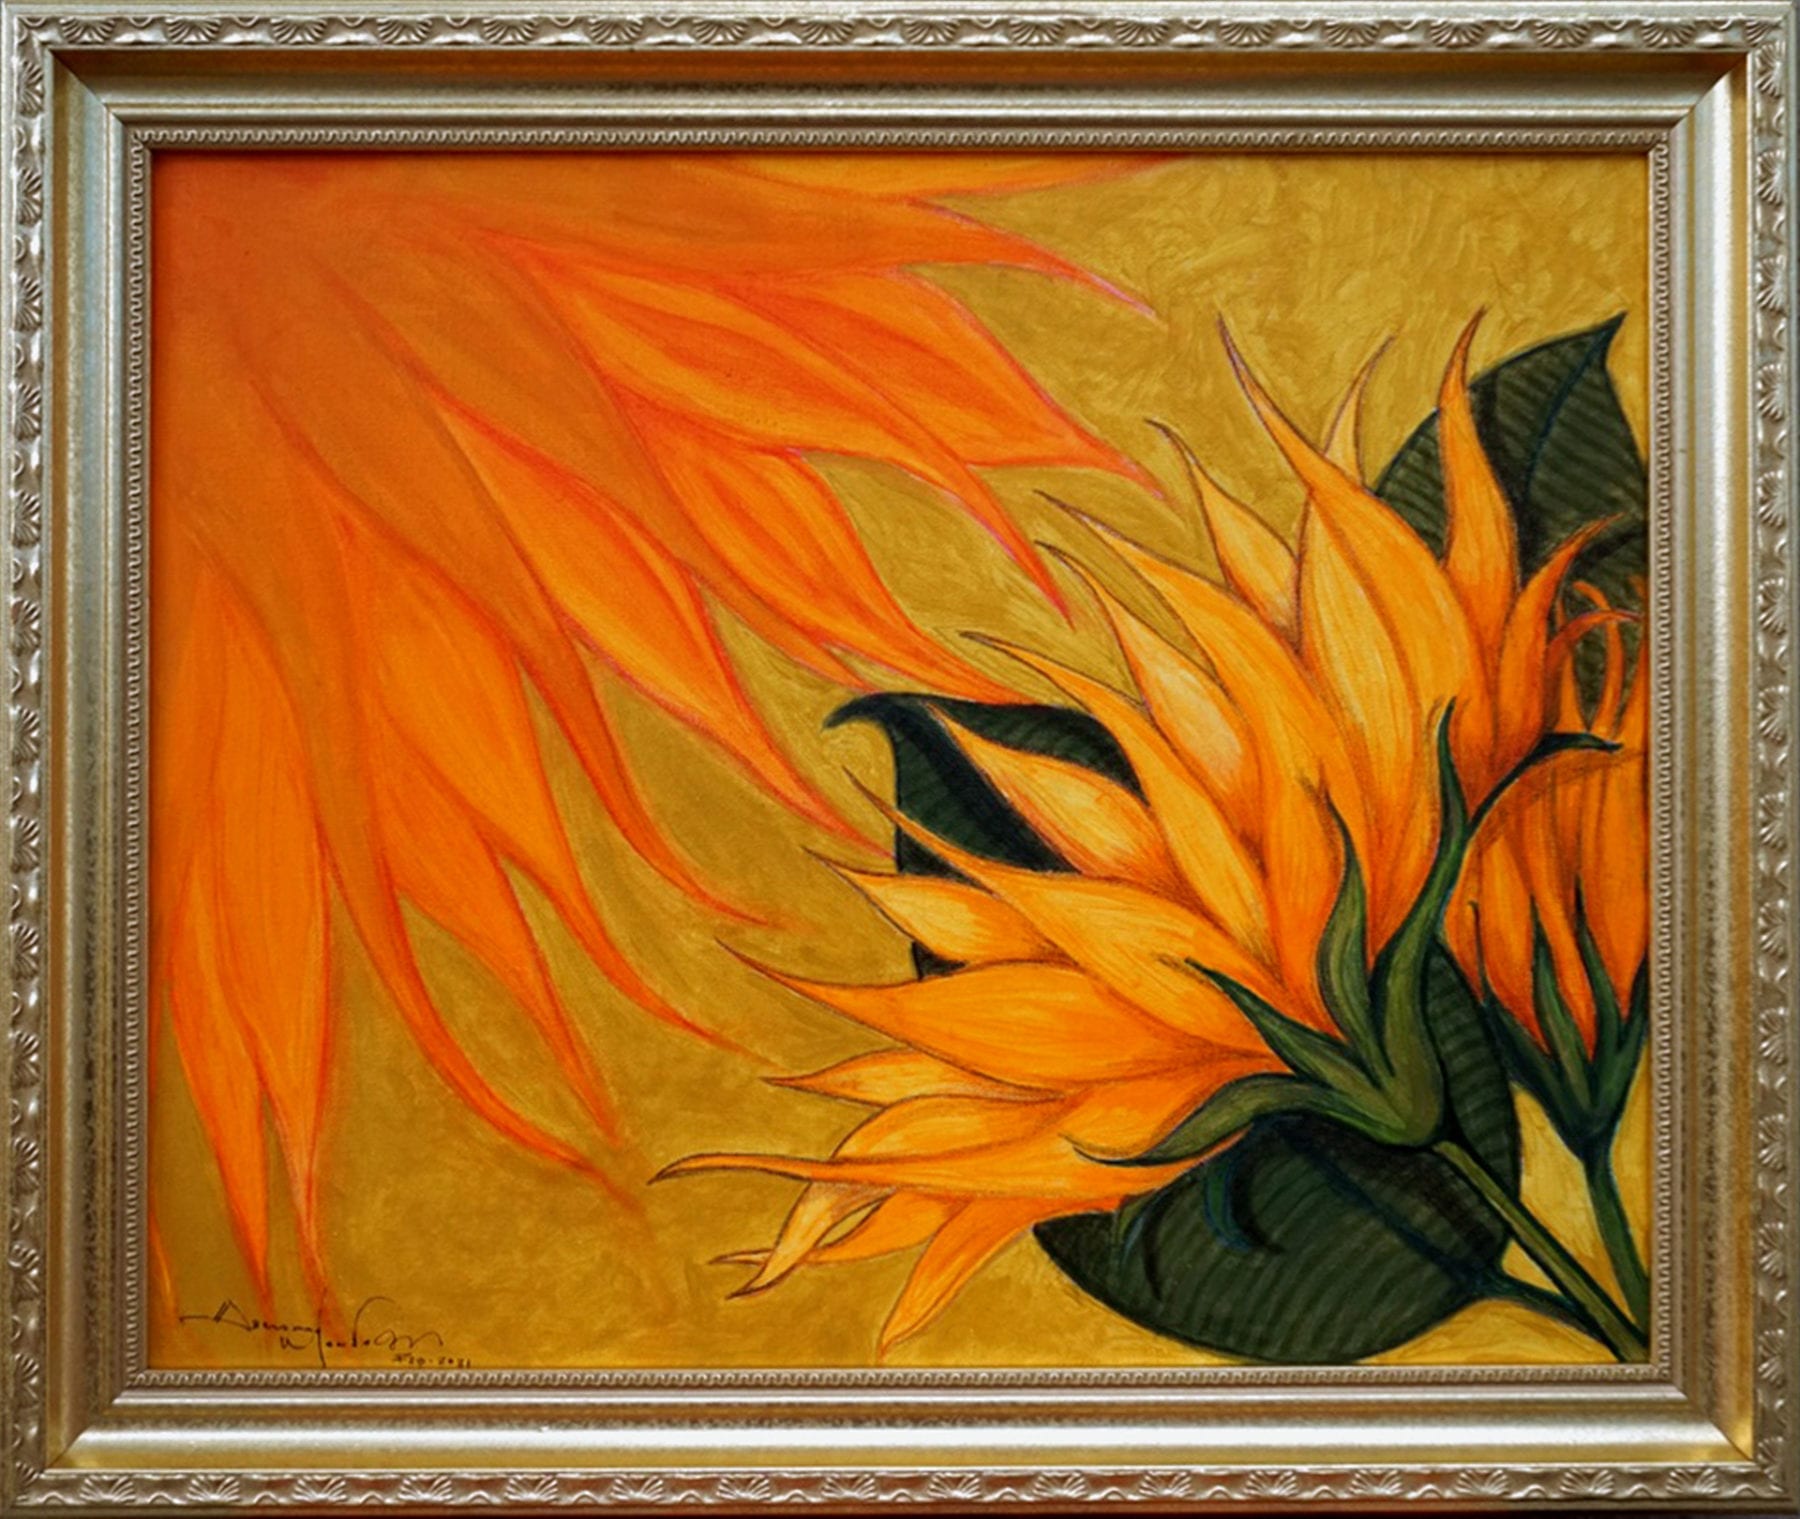 Abelardo Montano, The Golden Light, mixed media - acrylic / watercolor / color pencils on canvas, 24 x 20 inches